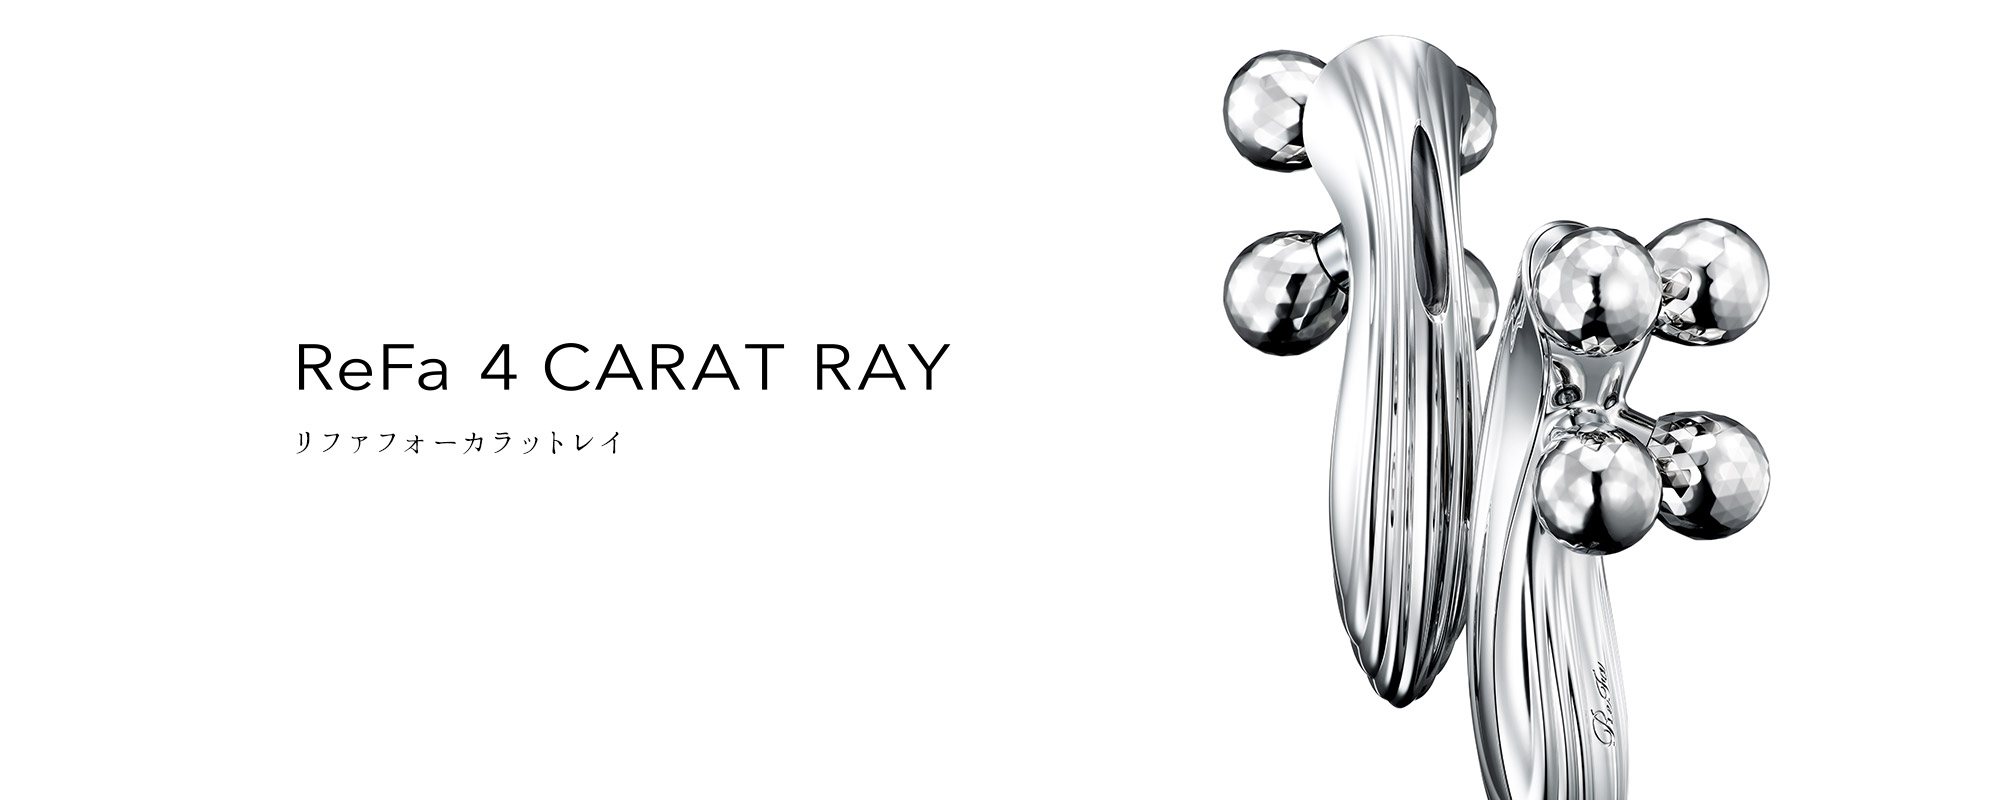 リファフォーカラットレイ - ReFa 4 CARAT RAY | 商品情報 | ReFa（リファ）公式ブランドサイト